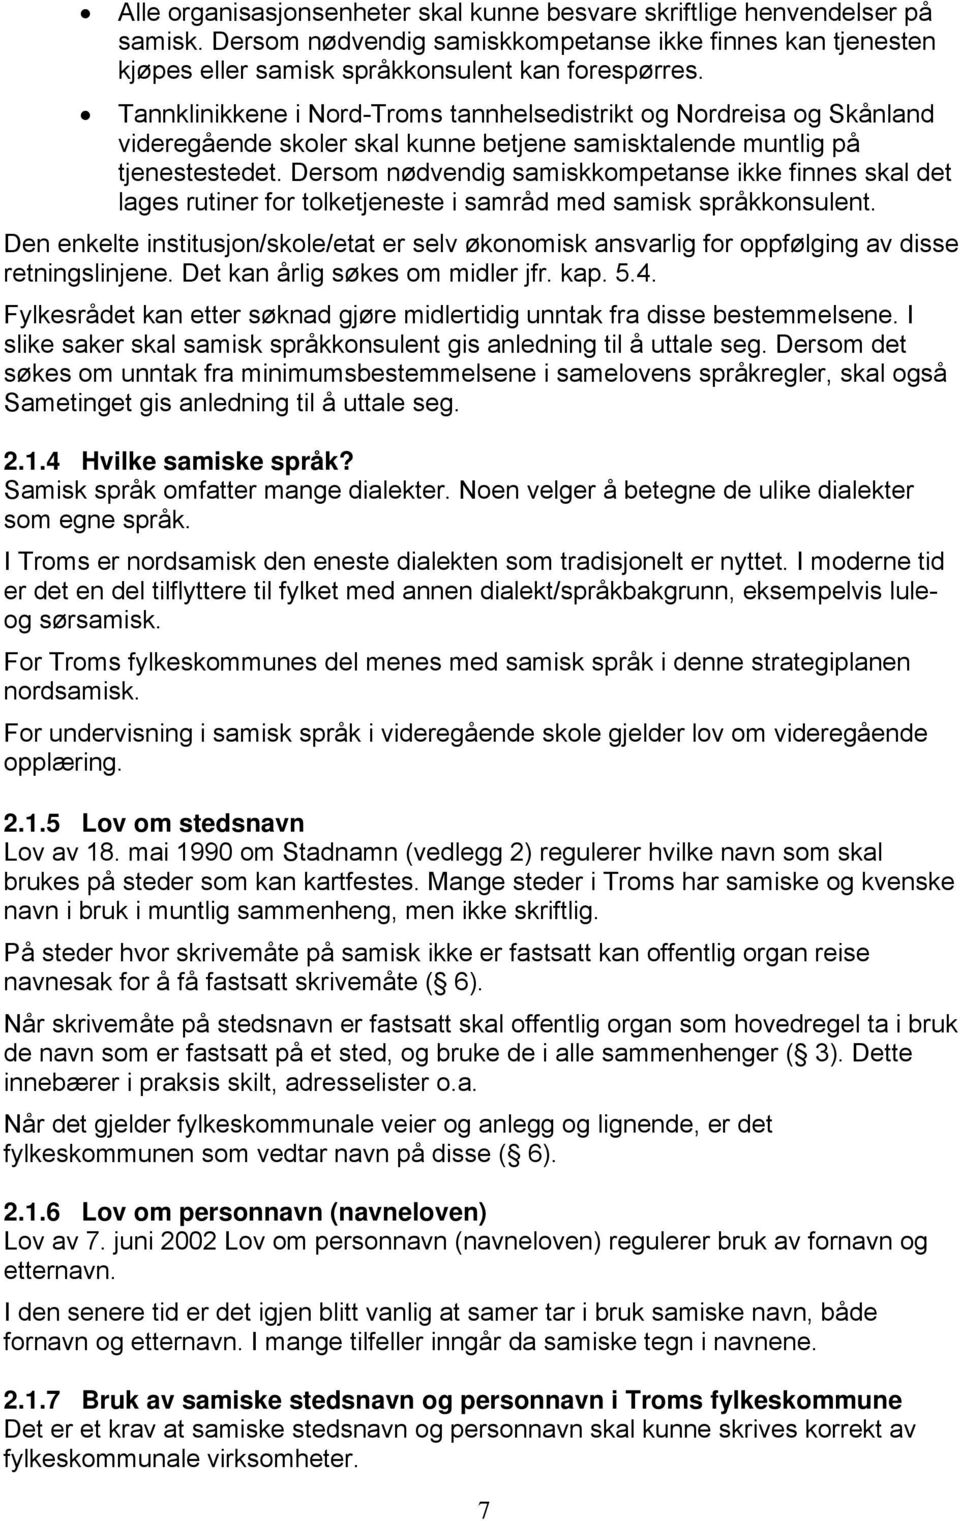 Dersom nødvendig samiskkompetanse ikke finnes skal det lages rutiner for tolketjeneste i samråd med samisk språkkonsulent.